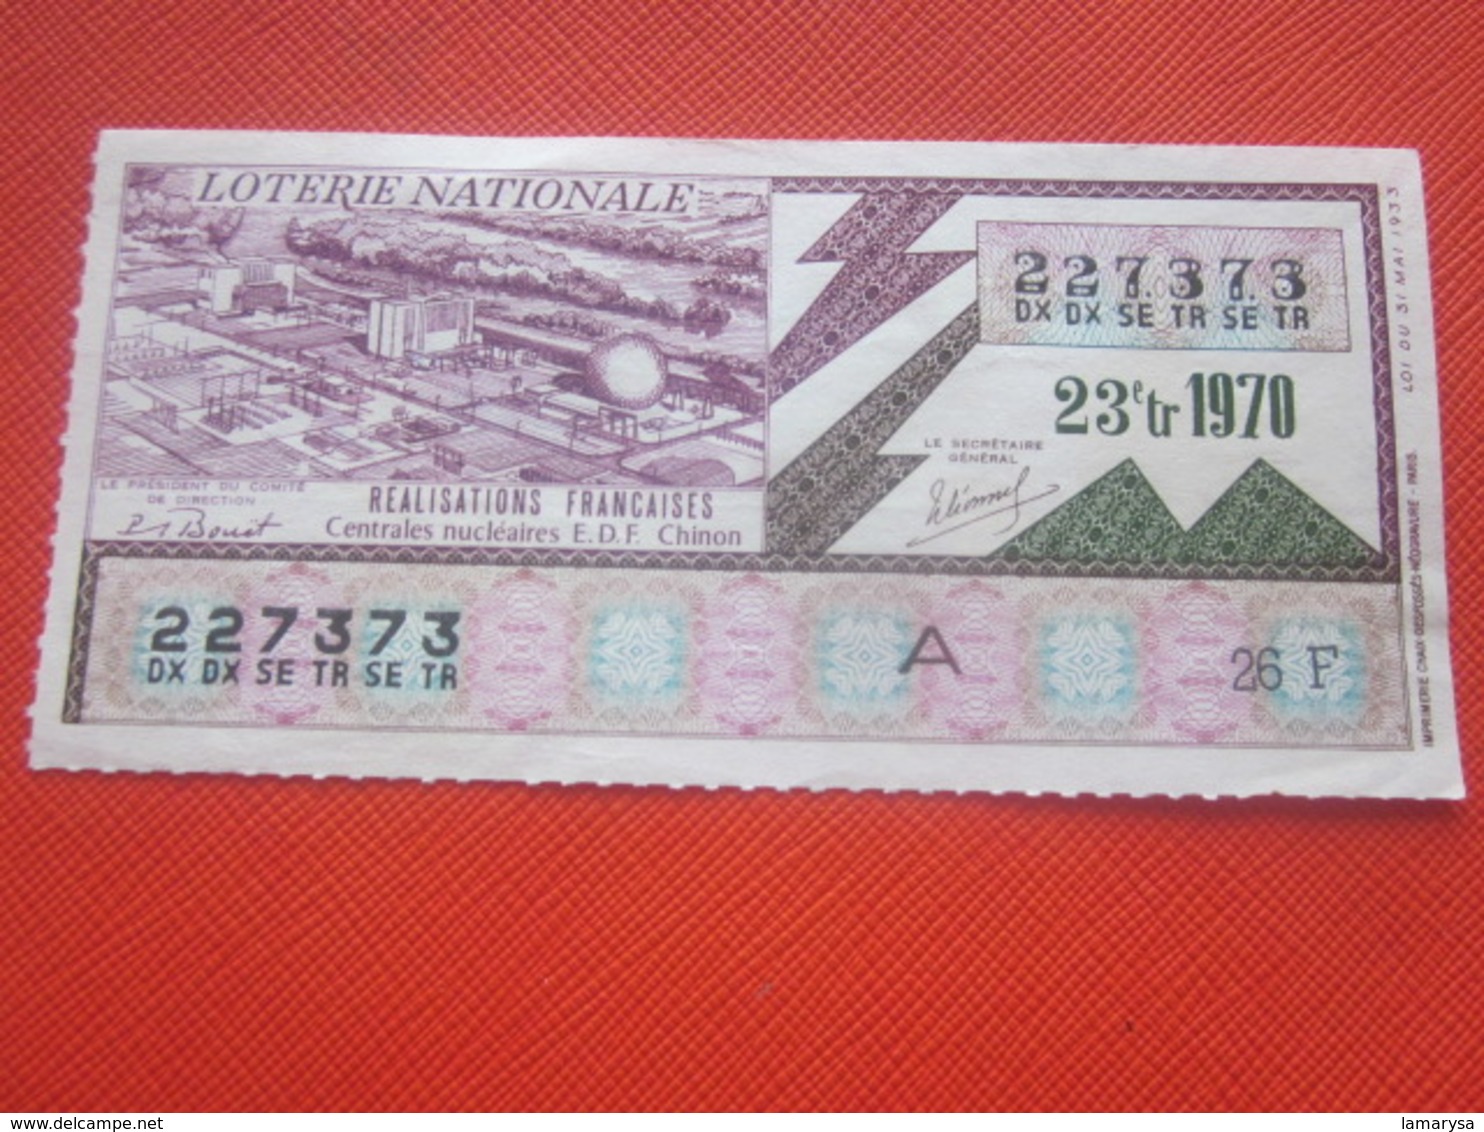 1970-CENTRALES NUCLÉAIRE E.D.F. CHINON RÉALISATIONS FRANÇAISES Billet De La Loterie Nationale- IMPRIMÉE TAILLE DOUCE - Loterijbiljetten